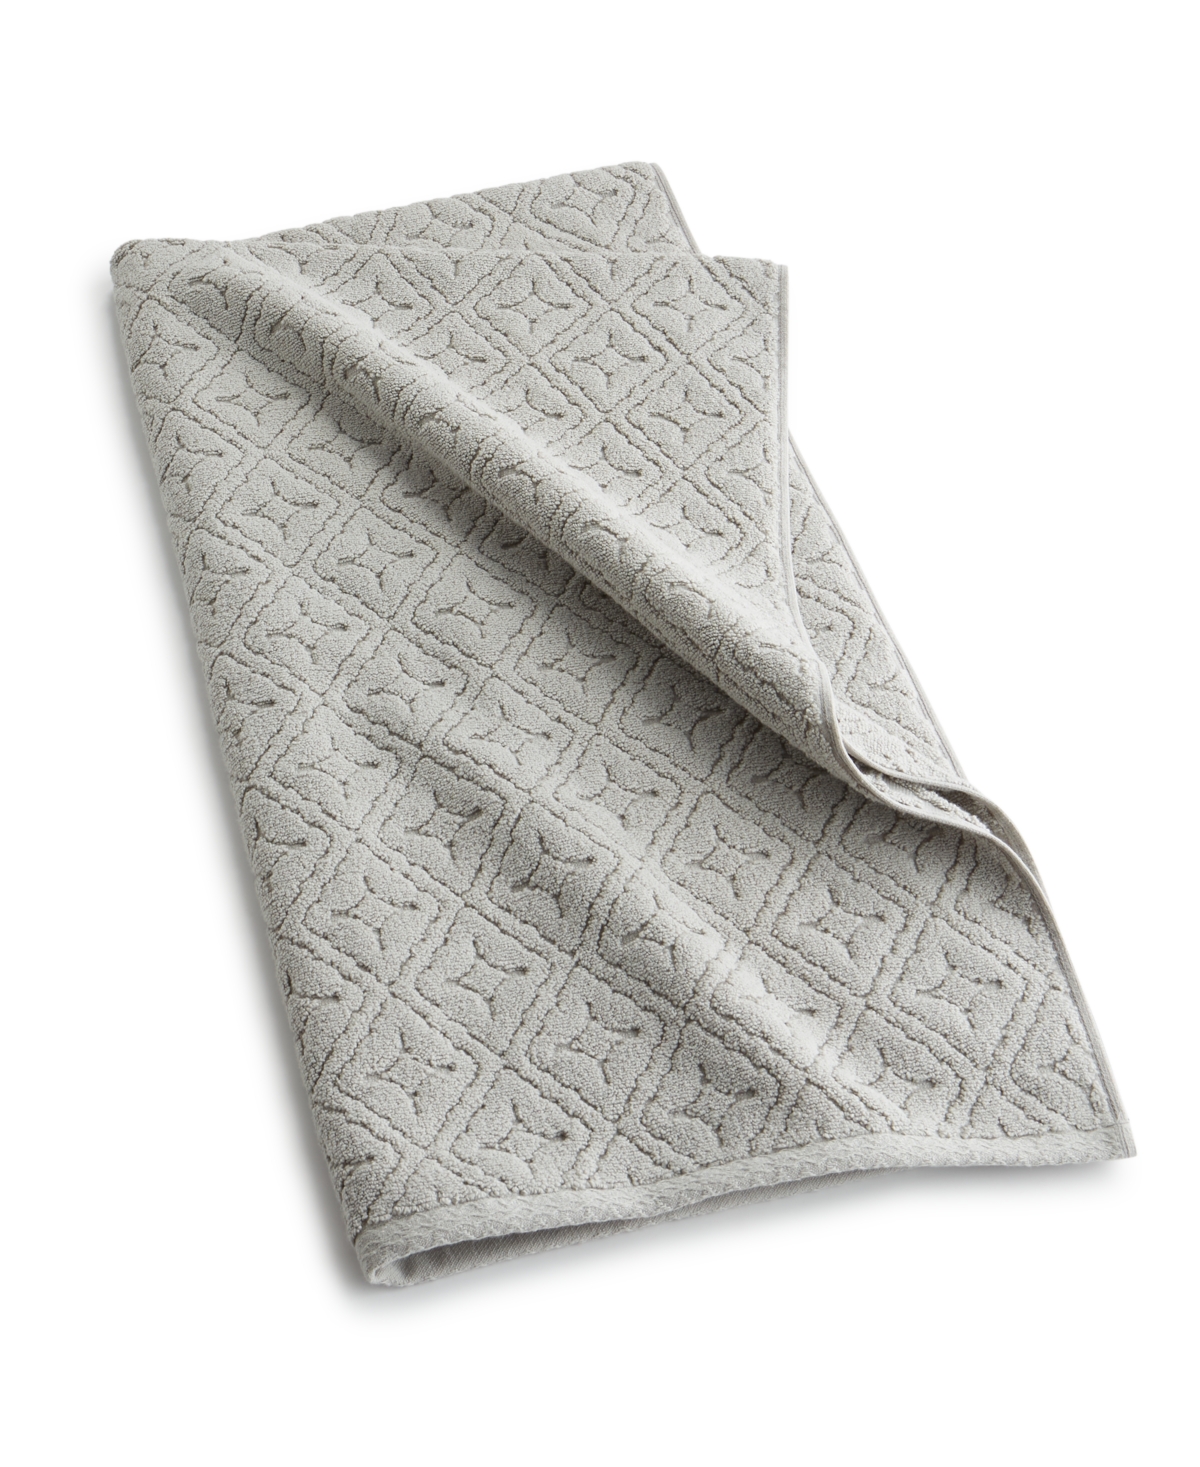 33x70 Personalized Linen Towels, Dark Gray Turkish Bath Towels